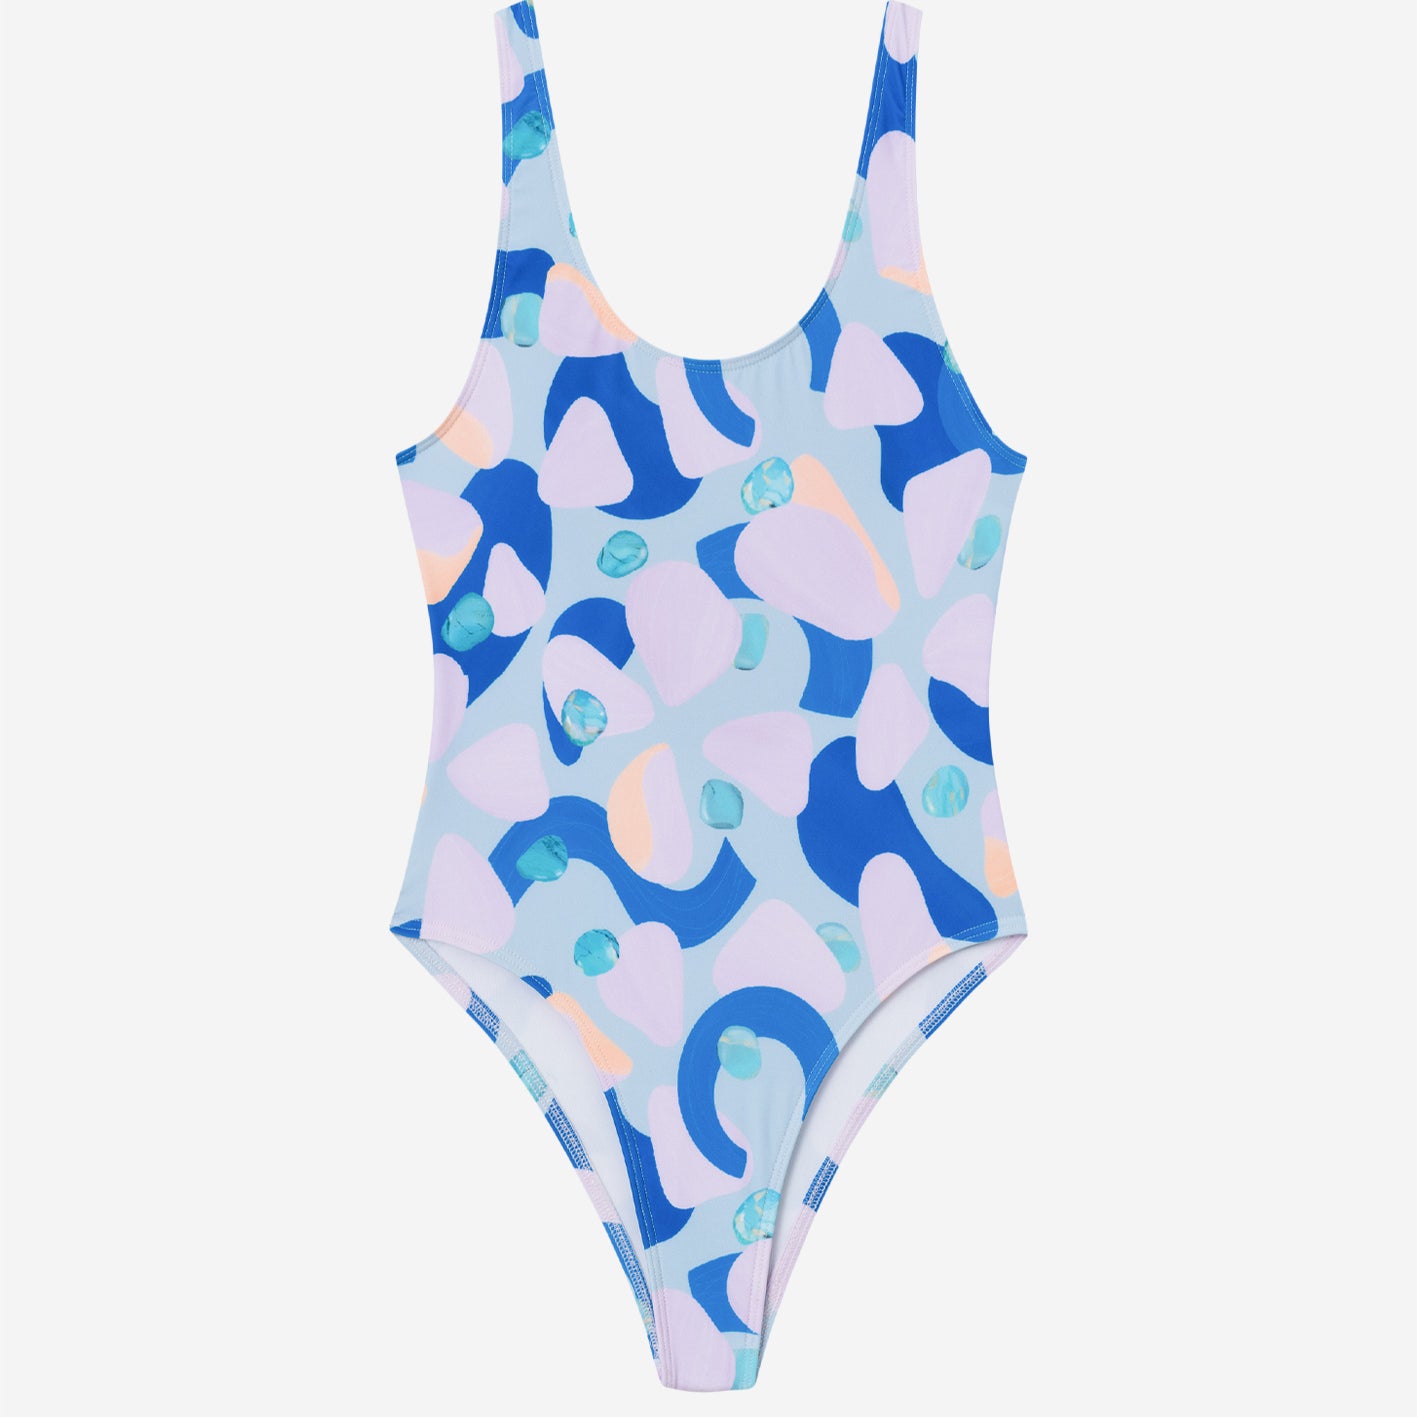 Multicolor swimsuit